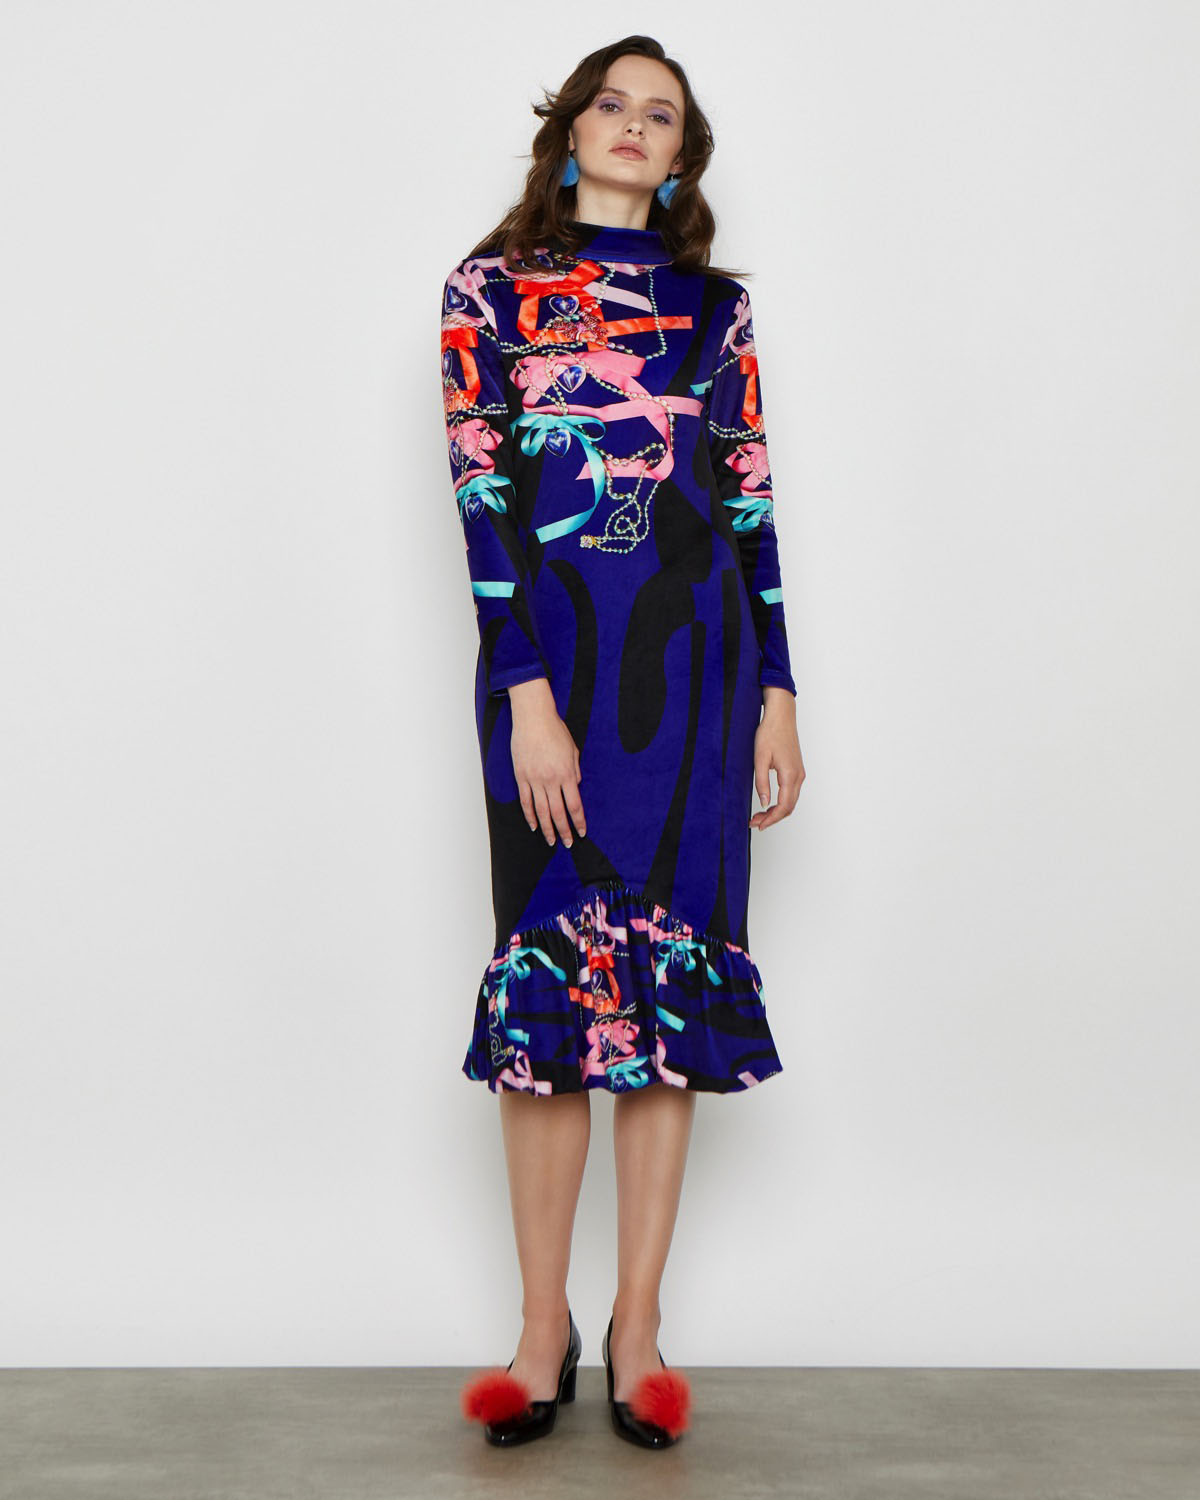 Dunnes Stores | Multi Joanne Hynes Velvet Heirloom Dress1200 x 1500